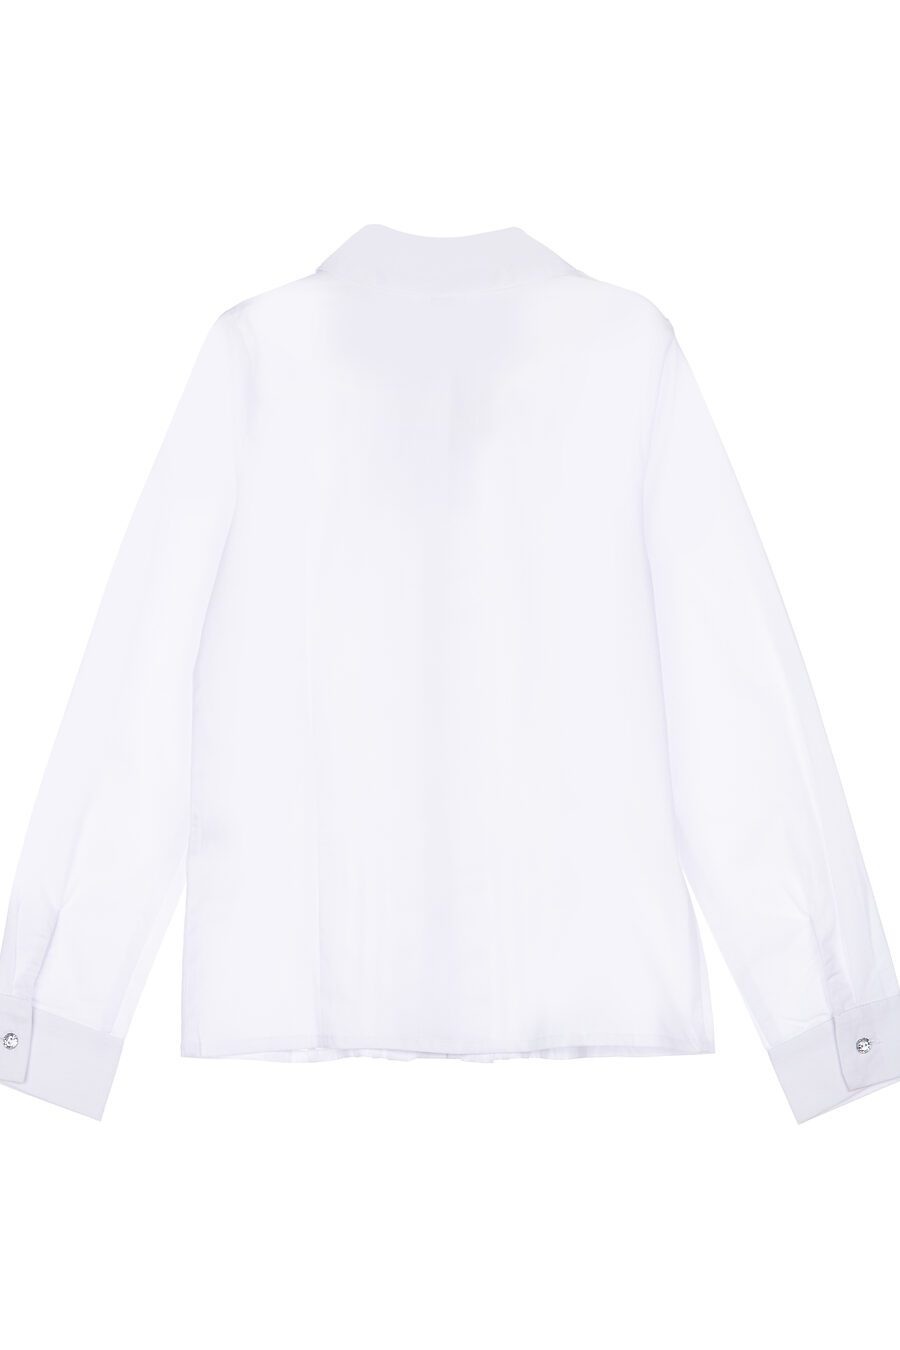 Блуза PLAYTODAY (785753), купить в Moyo.moda